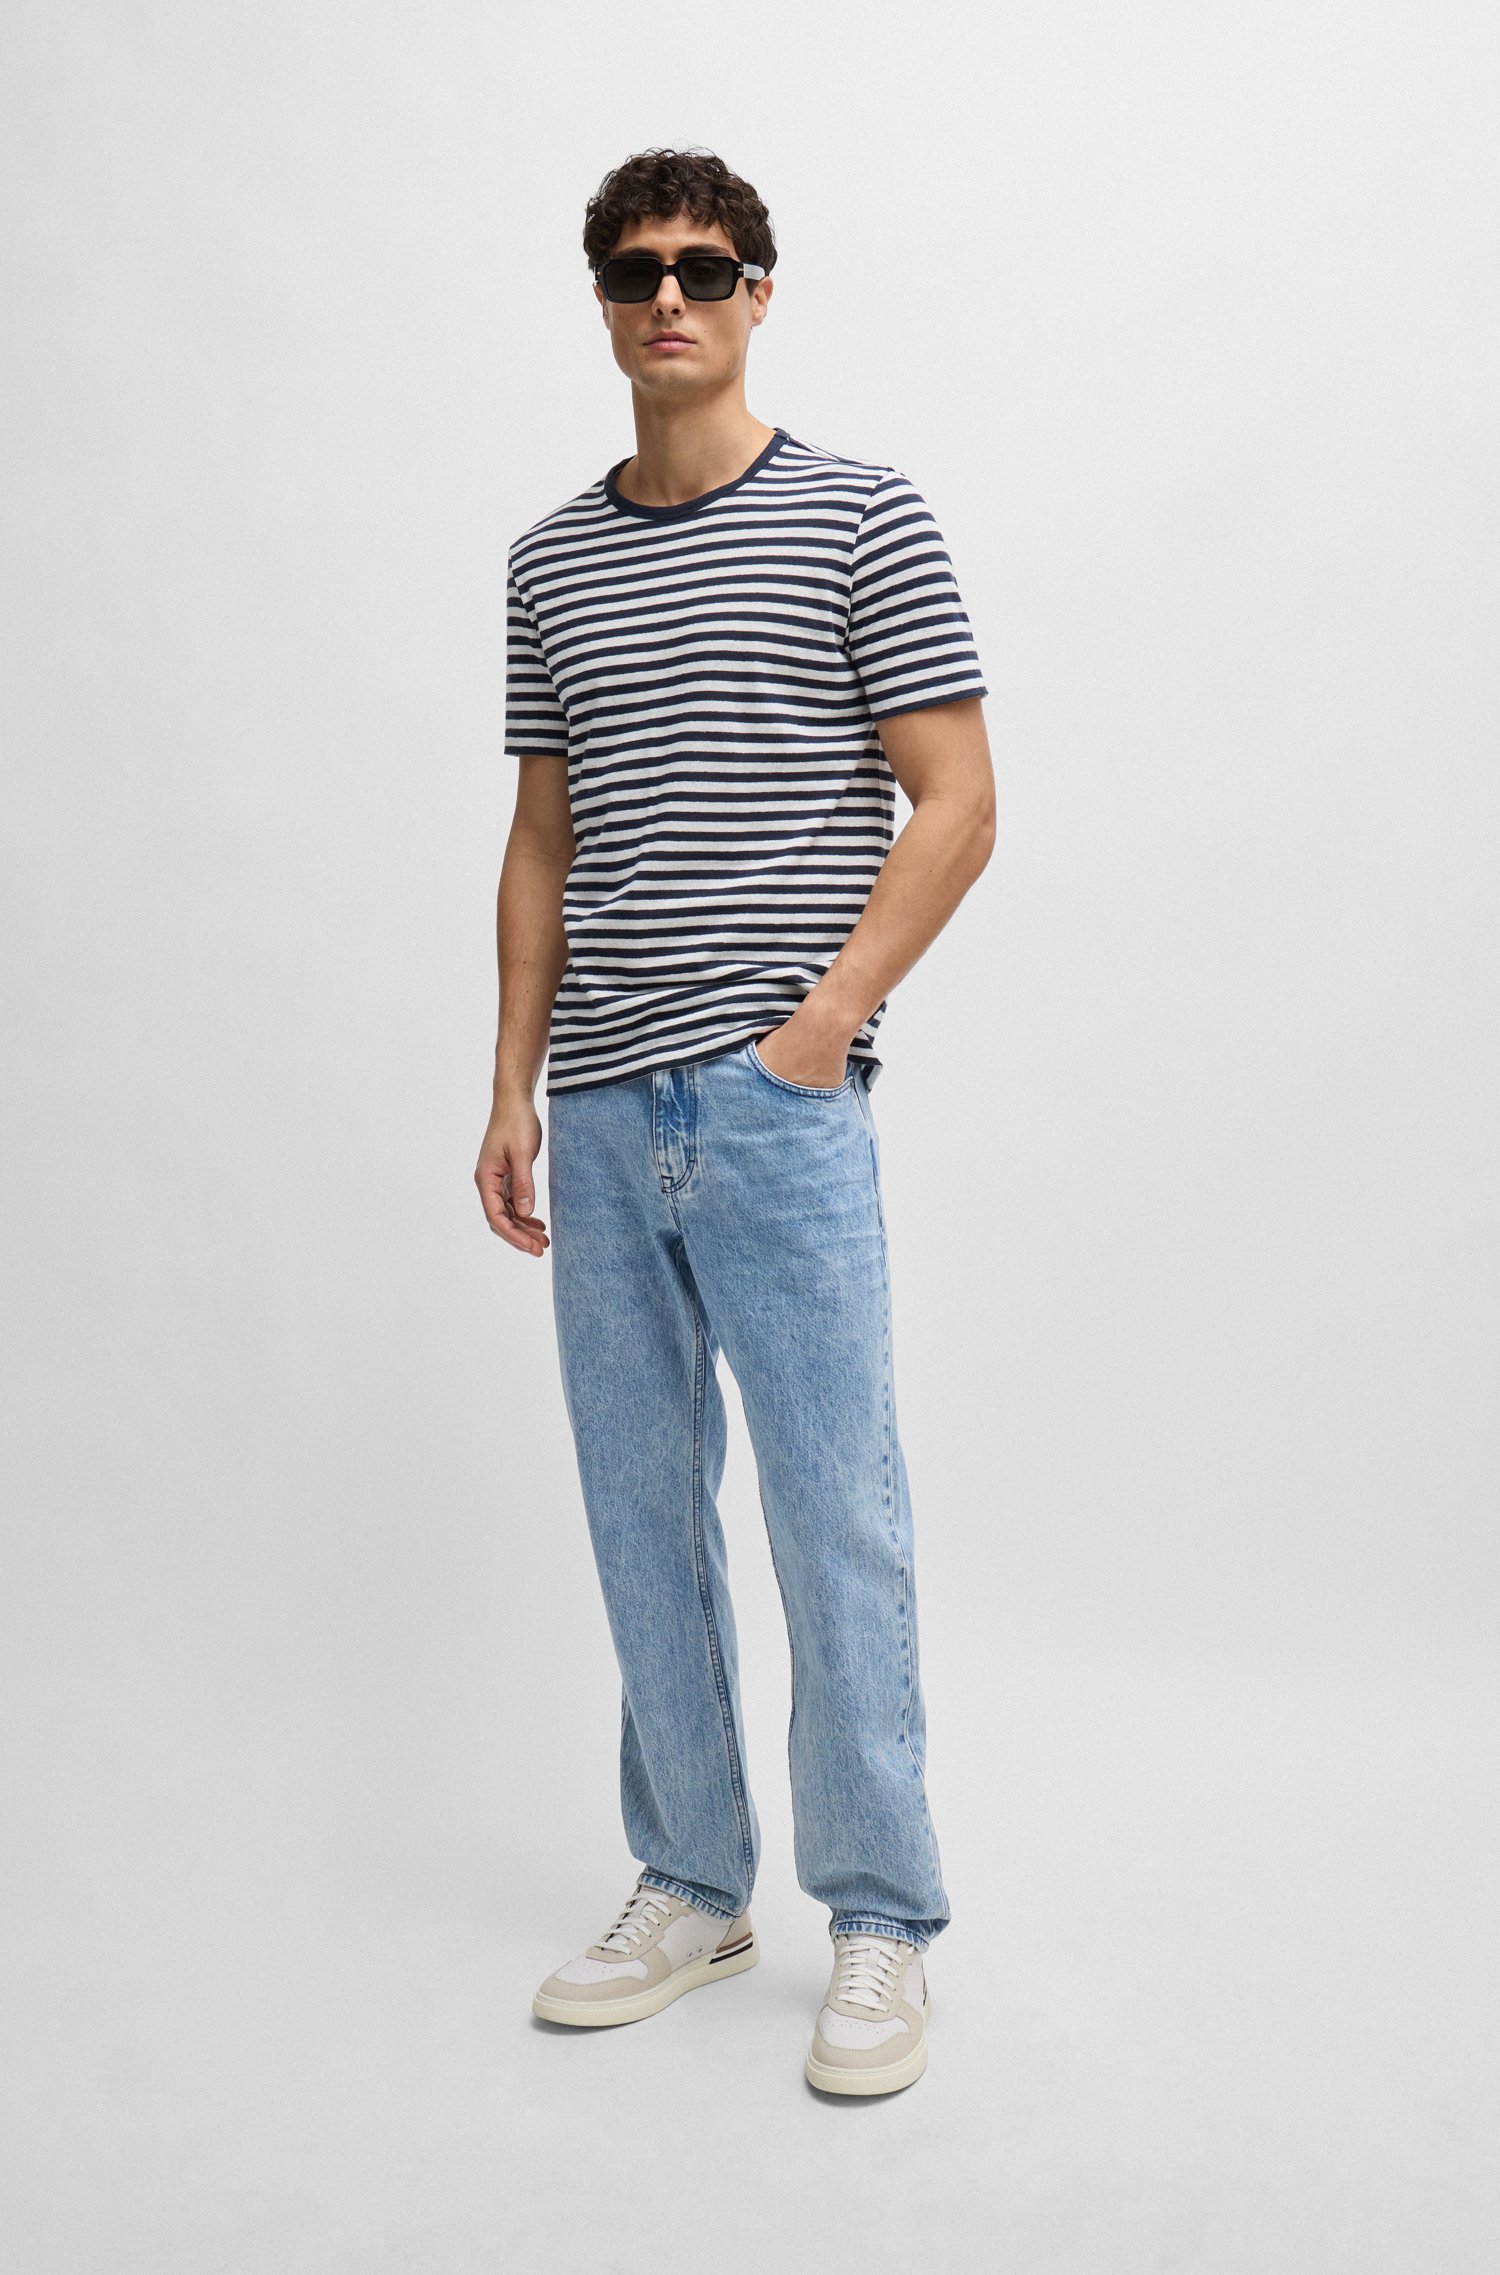 Camiseta a rayas horizontales de algodón y lino